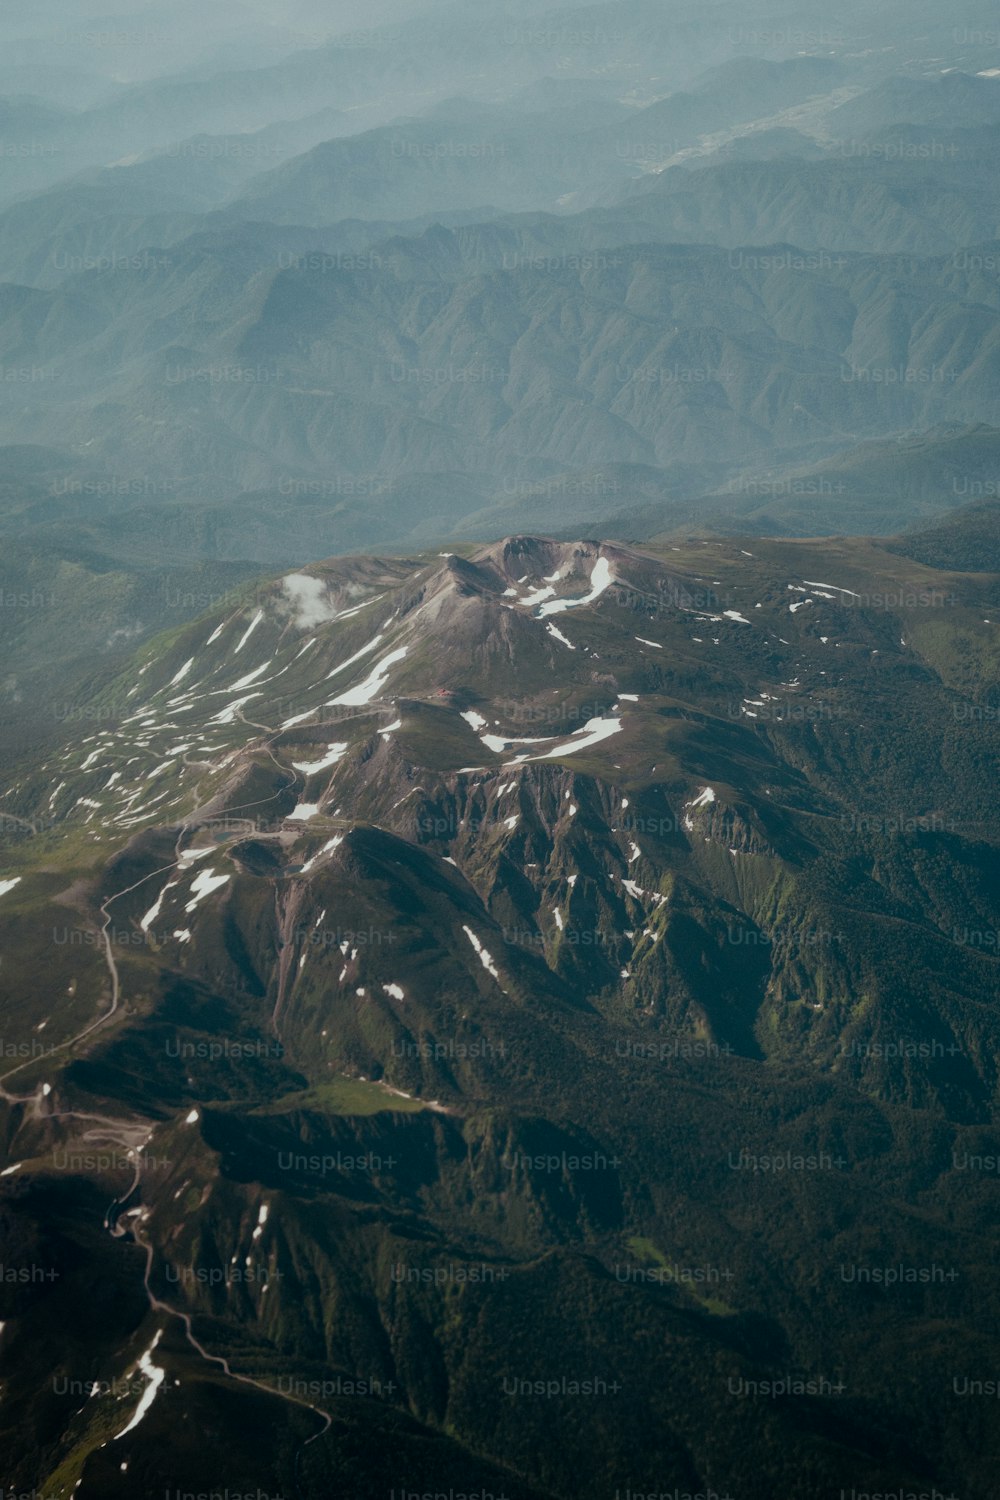 Una vista de una cadena montañosa desde un avión